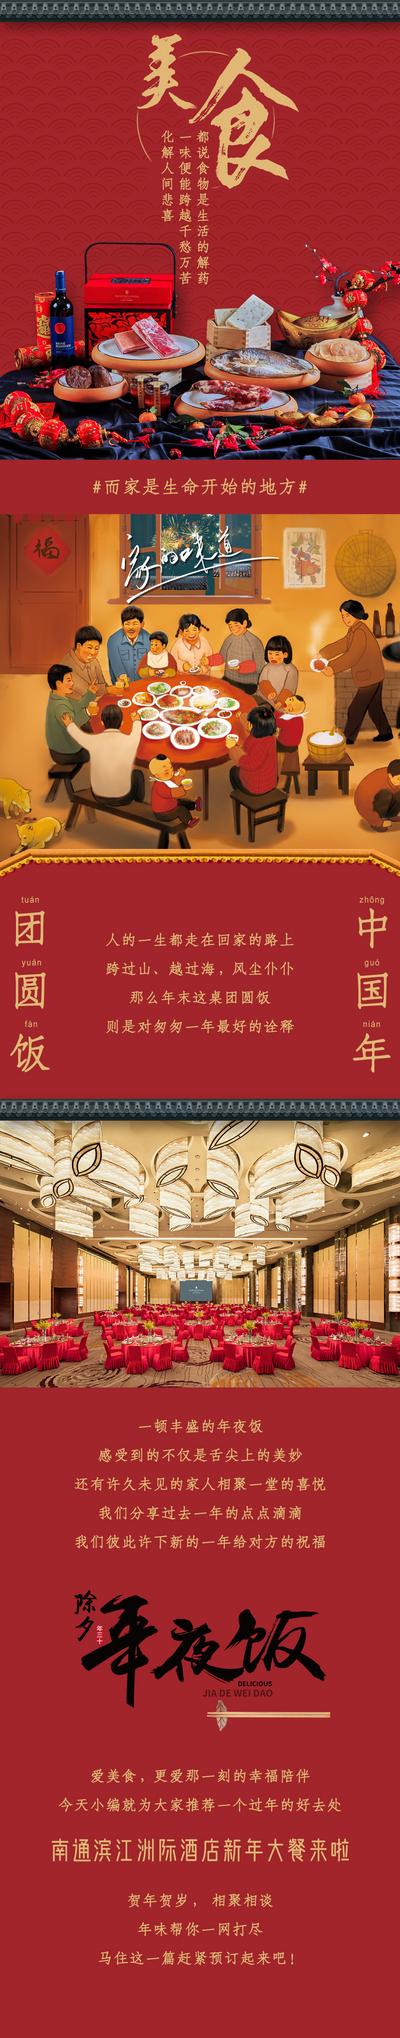 【南门网】海报 长图 中国传统节日 新年 年夜饭 酒店 除夕 美食